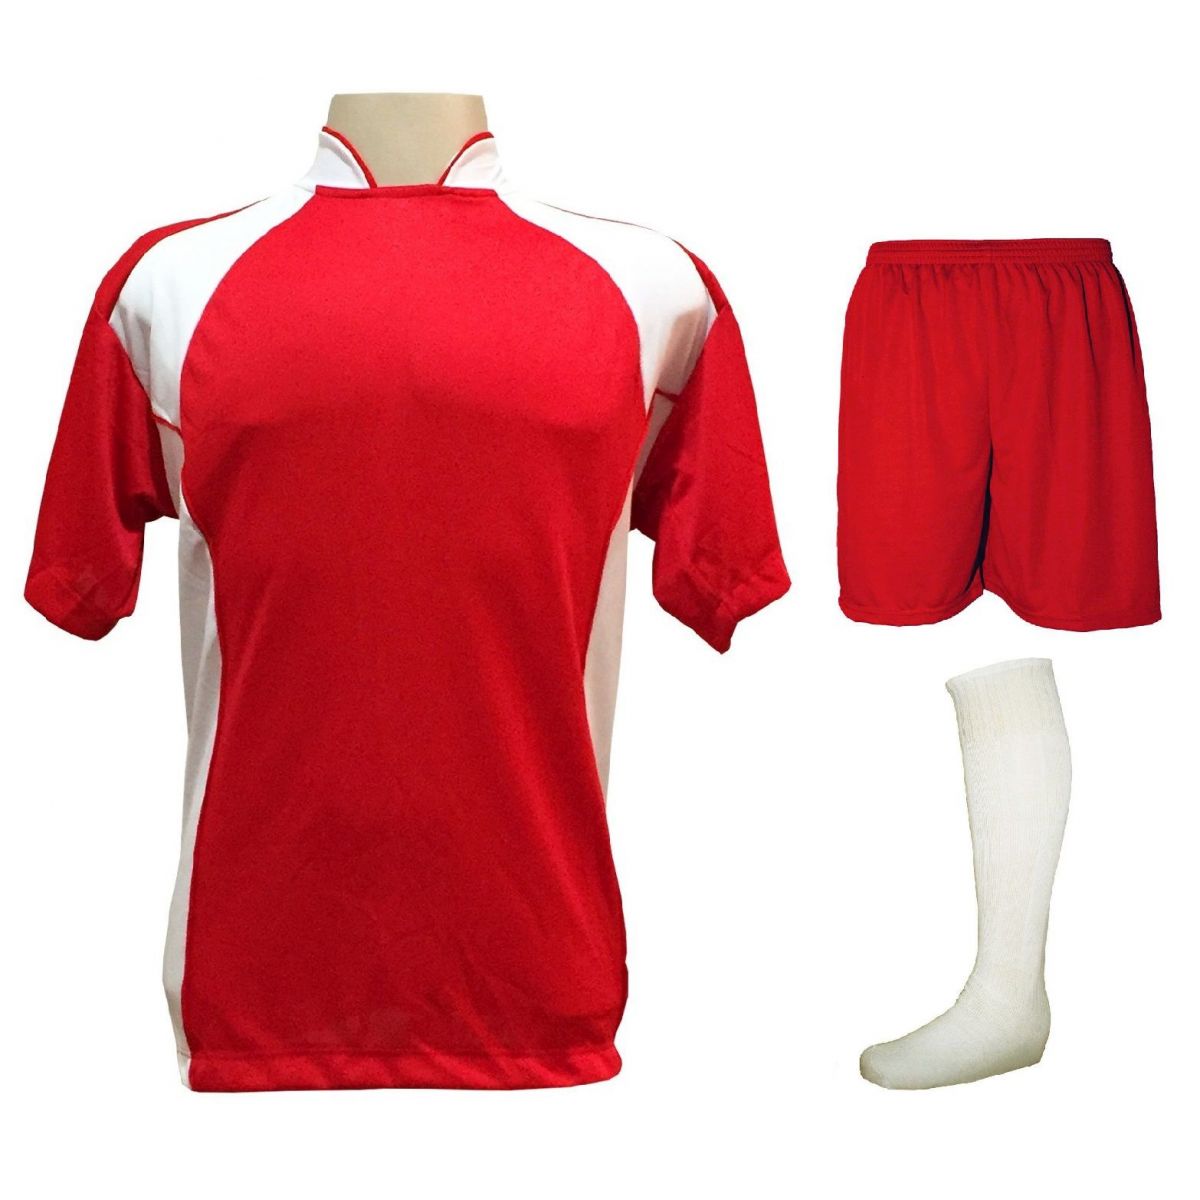 Uniforme Esportivo Completo modelo Suécia 14+1 (14 camisas Vermelho/Branco + 14 calções Madrid Vermelho + 14 pares de meiões Brancos + 1 conjunto de goleiro) + Brindes